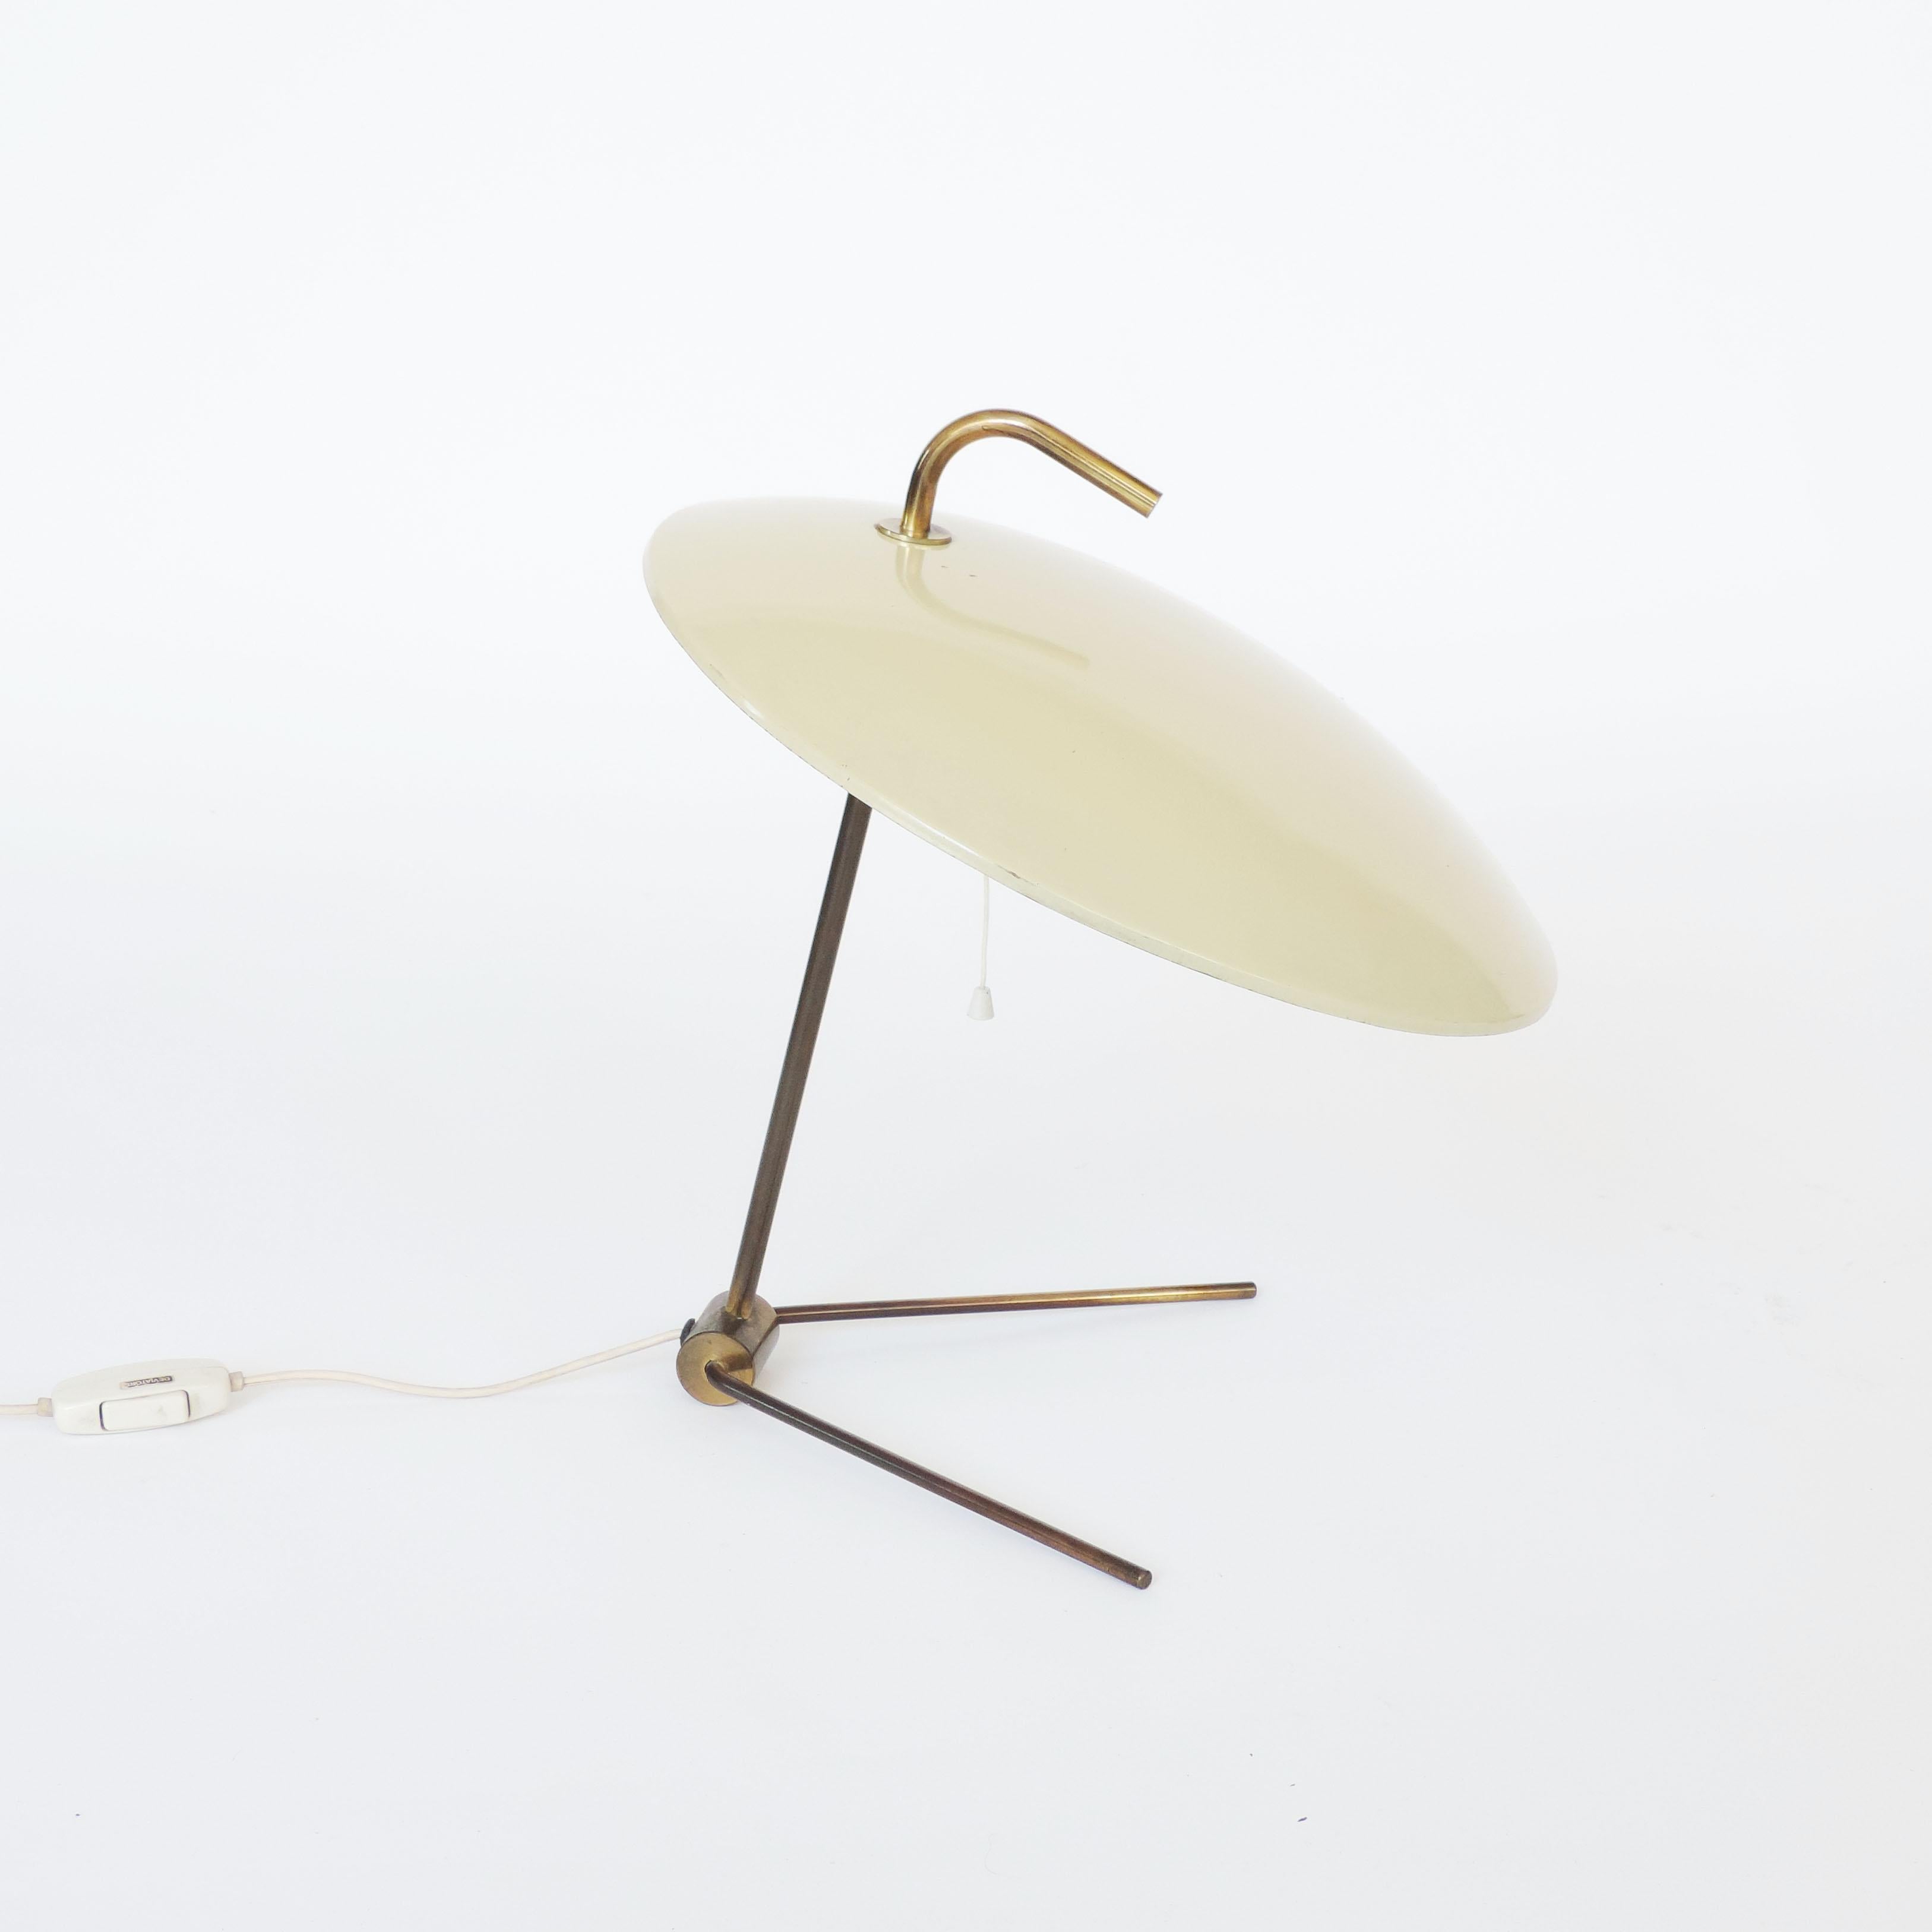 Italian Nikolay Diulgheroff Art Deco Futurism Table Lamp, Italy, 1938